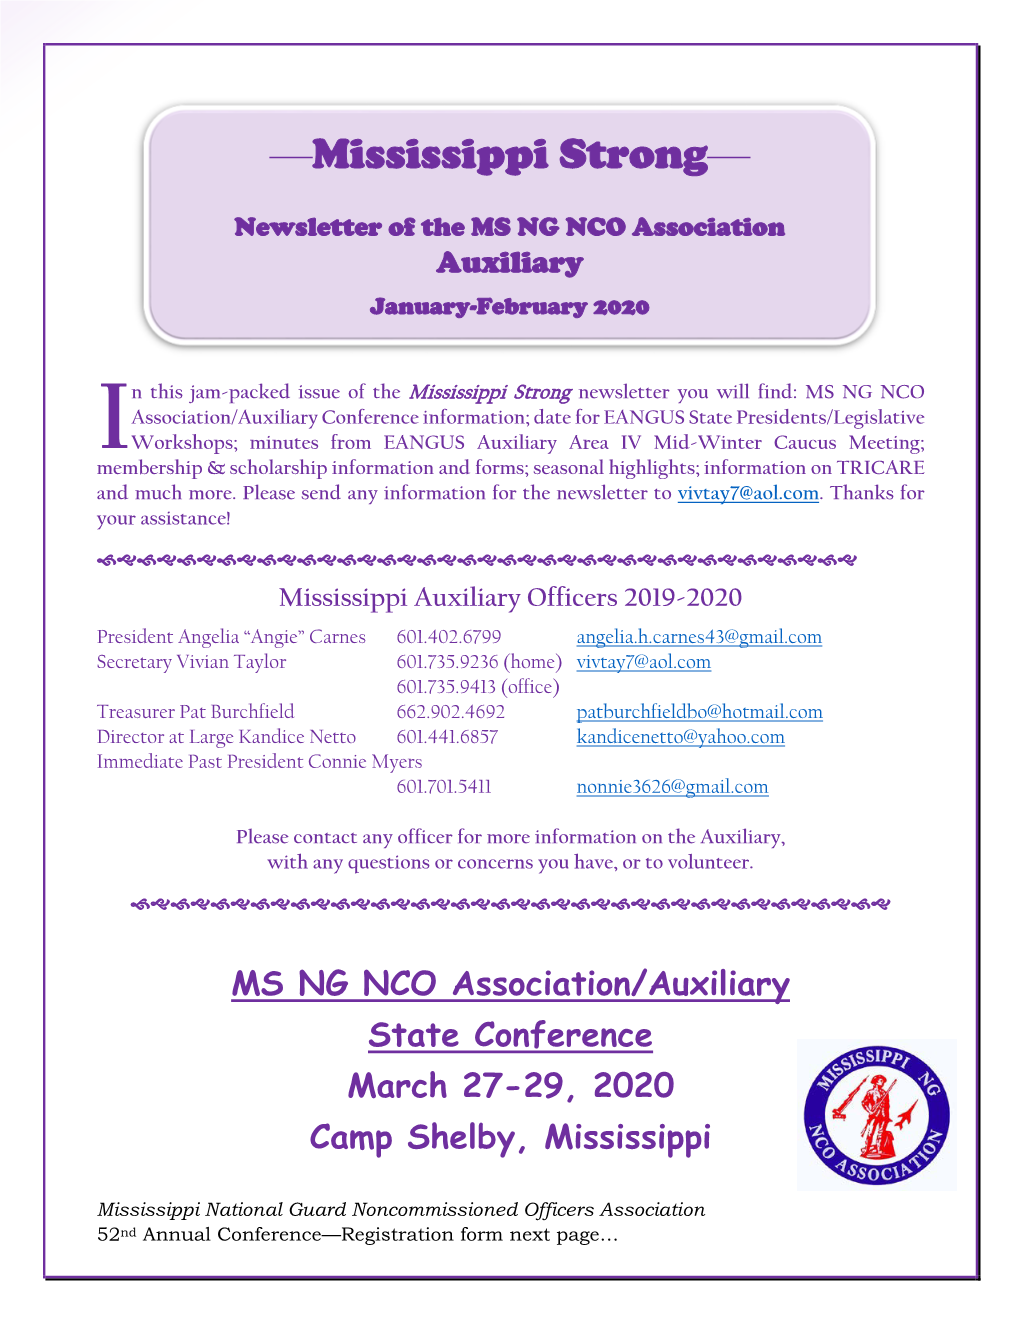 Mississippi Strong Newsletter